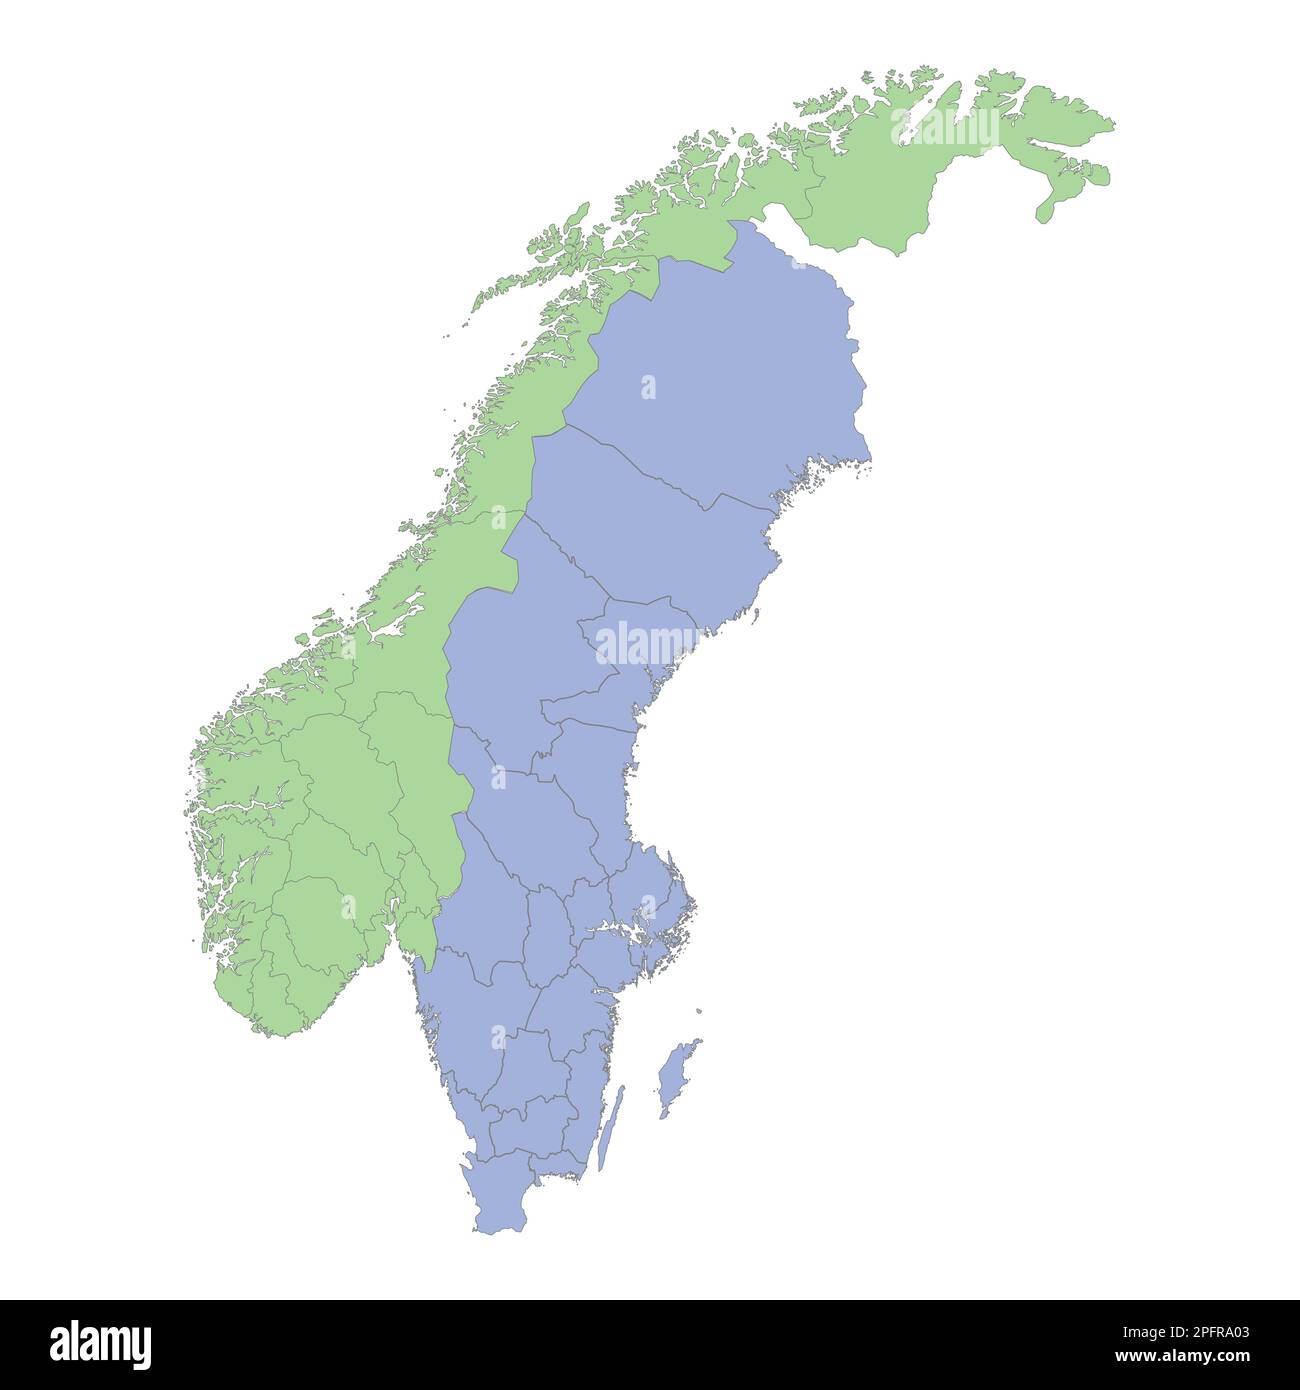 Mappa politica di alta qualità della Svezia e della Norvegia con i confini delle regioni o delle province. Illustrazione vettoriale Illustrazione Vettoriale